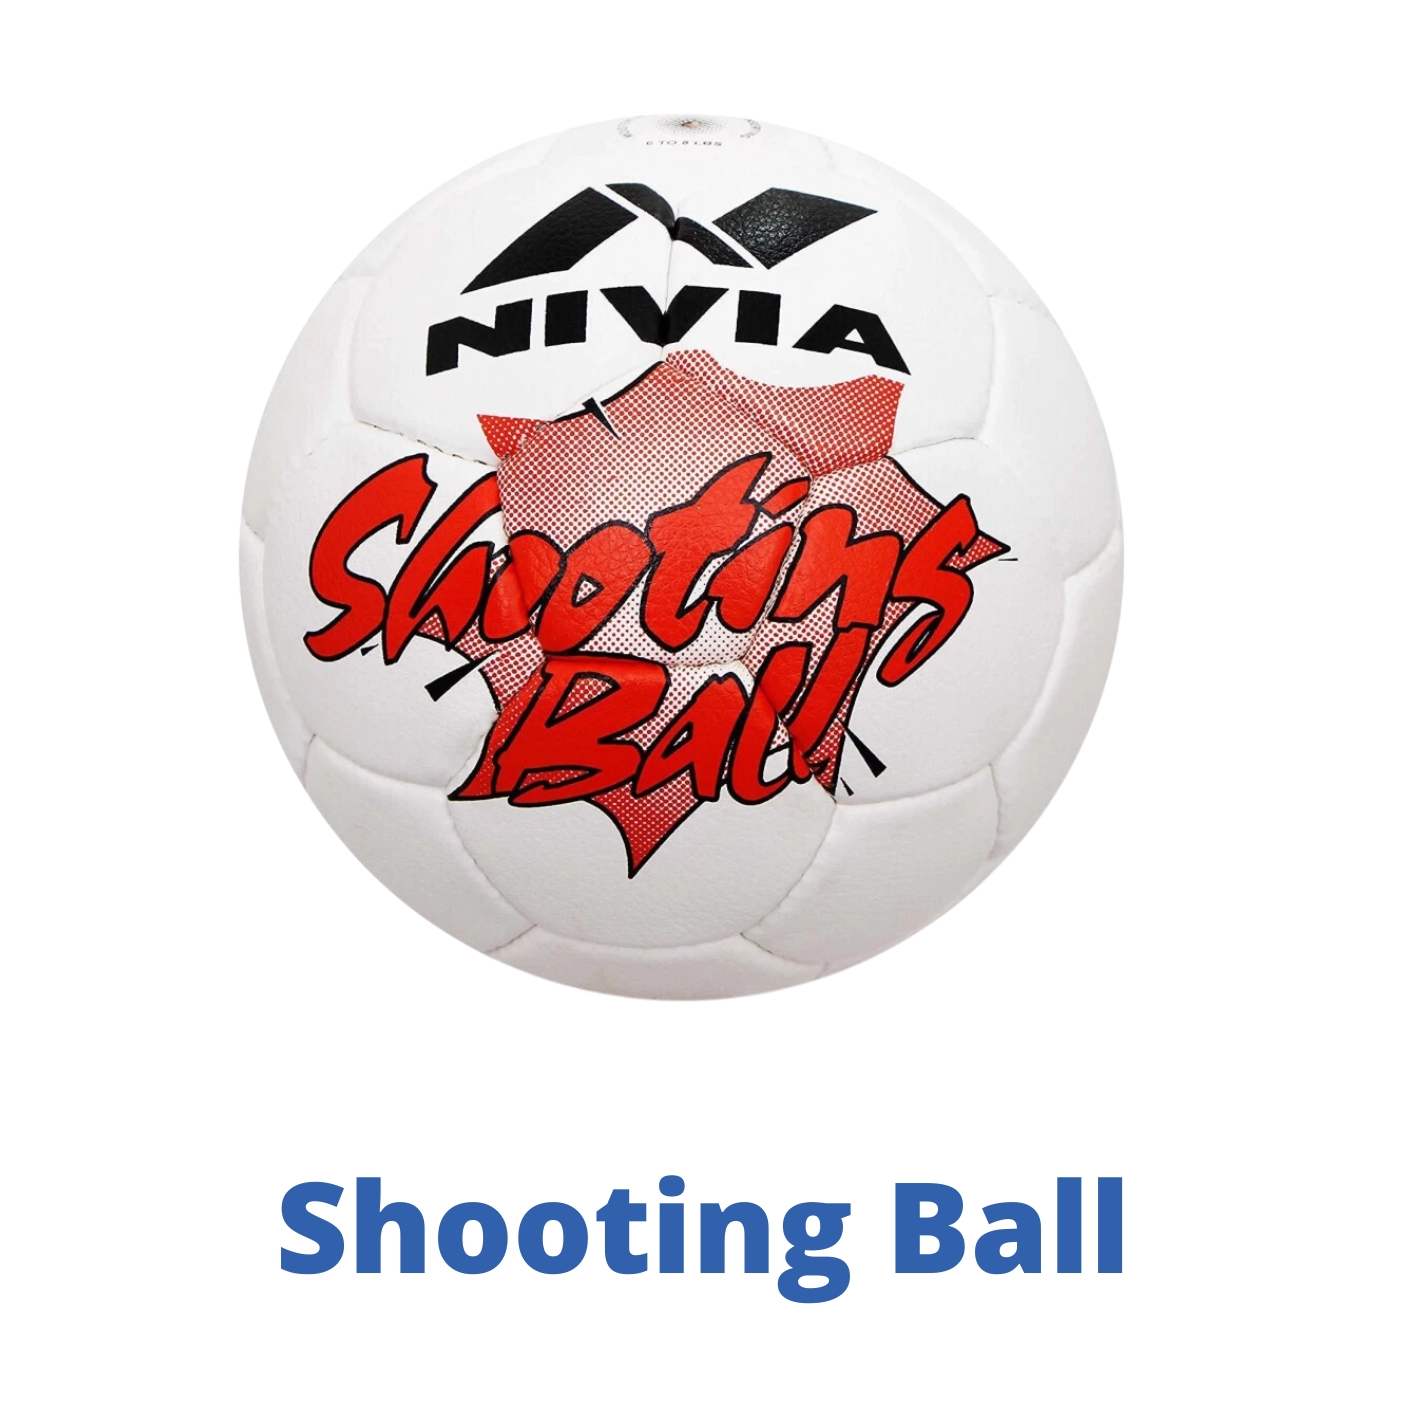 Shooting Ball